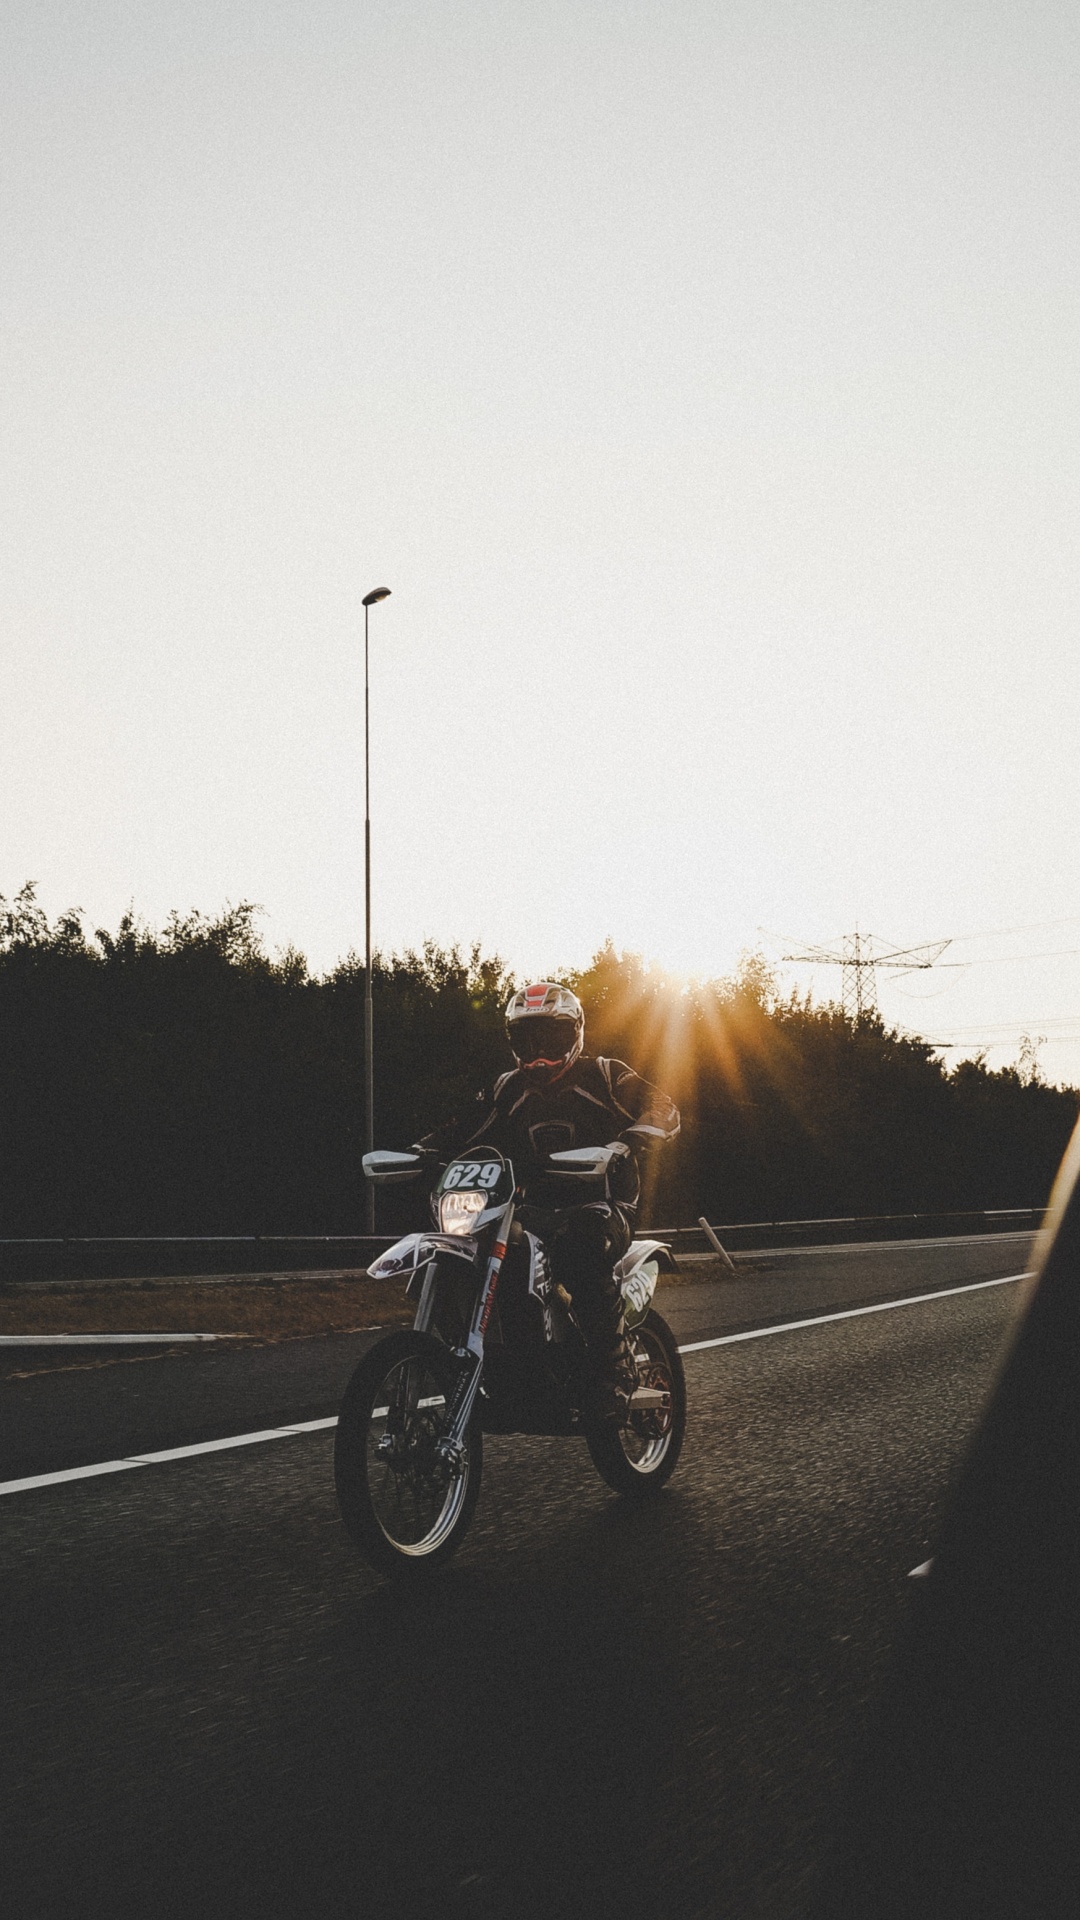 Man Riding Motorcycle Sur Route Pendant le Coucher du Soleil. Wallpaper in 1080x1920 Resolution